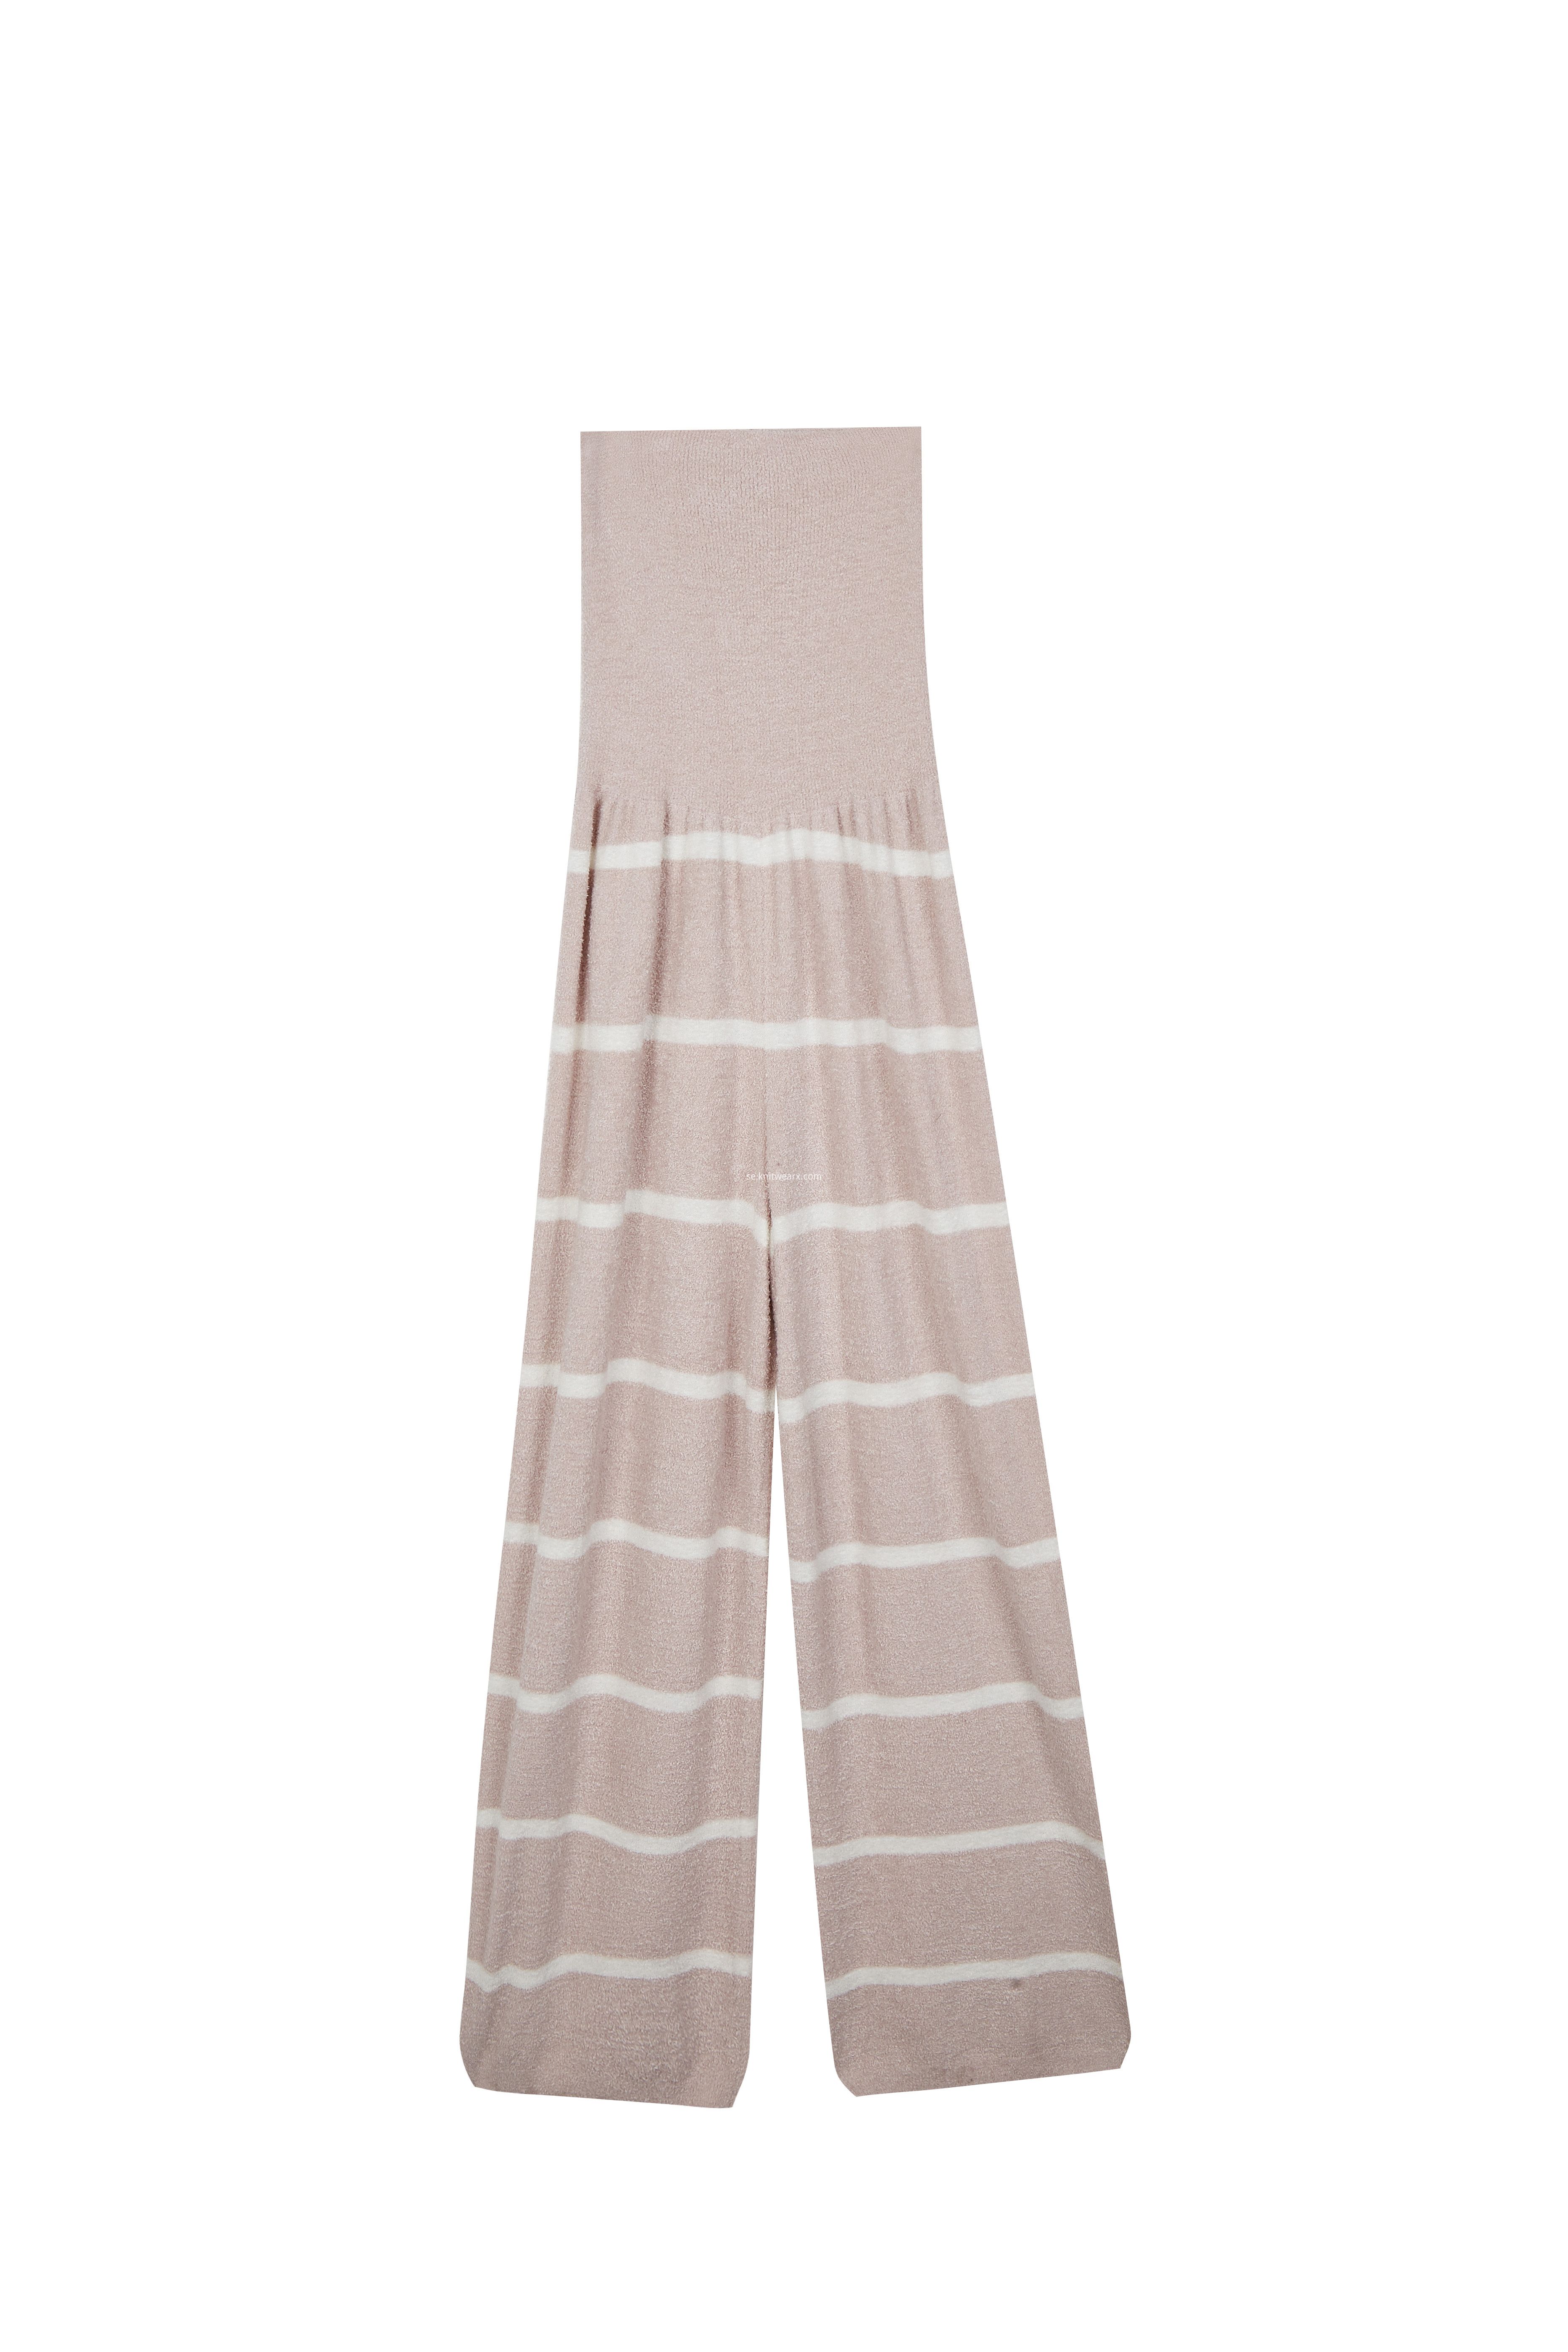 Women's Knitted Loungewear Homewear Stripe Pajama Pants